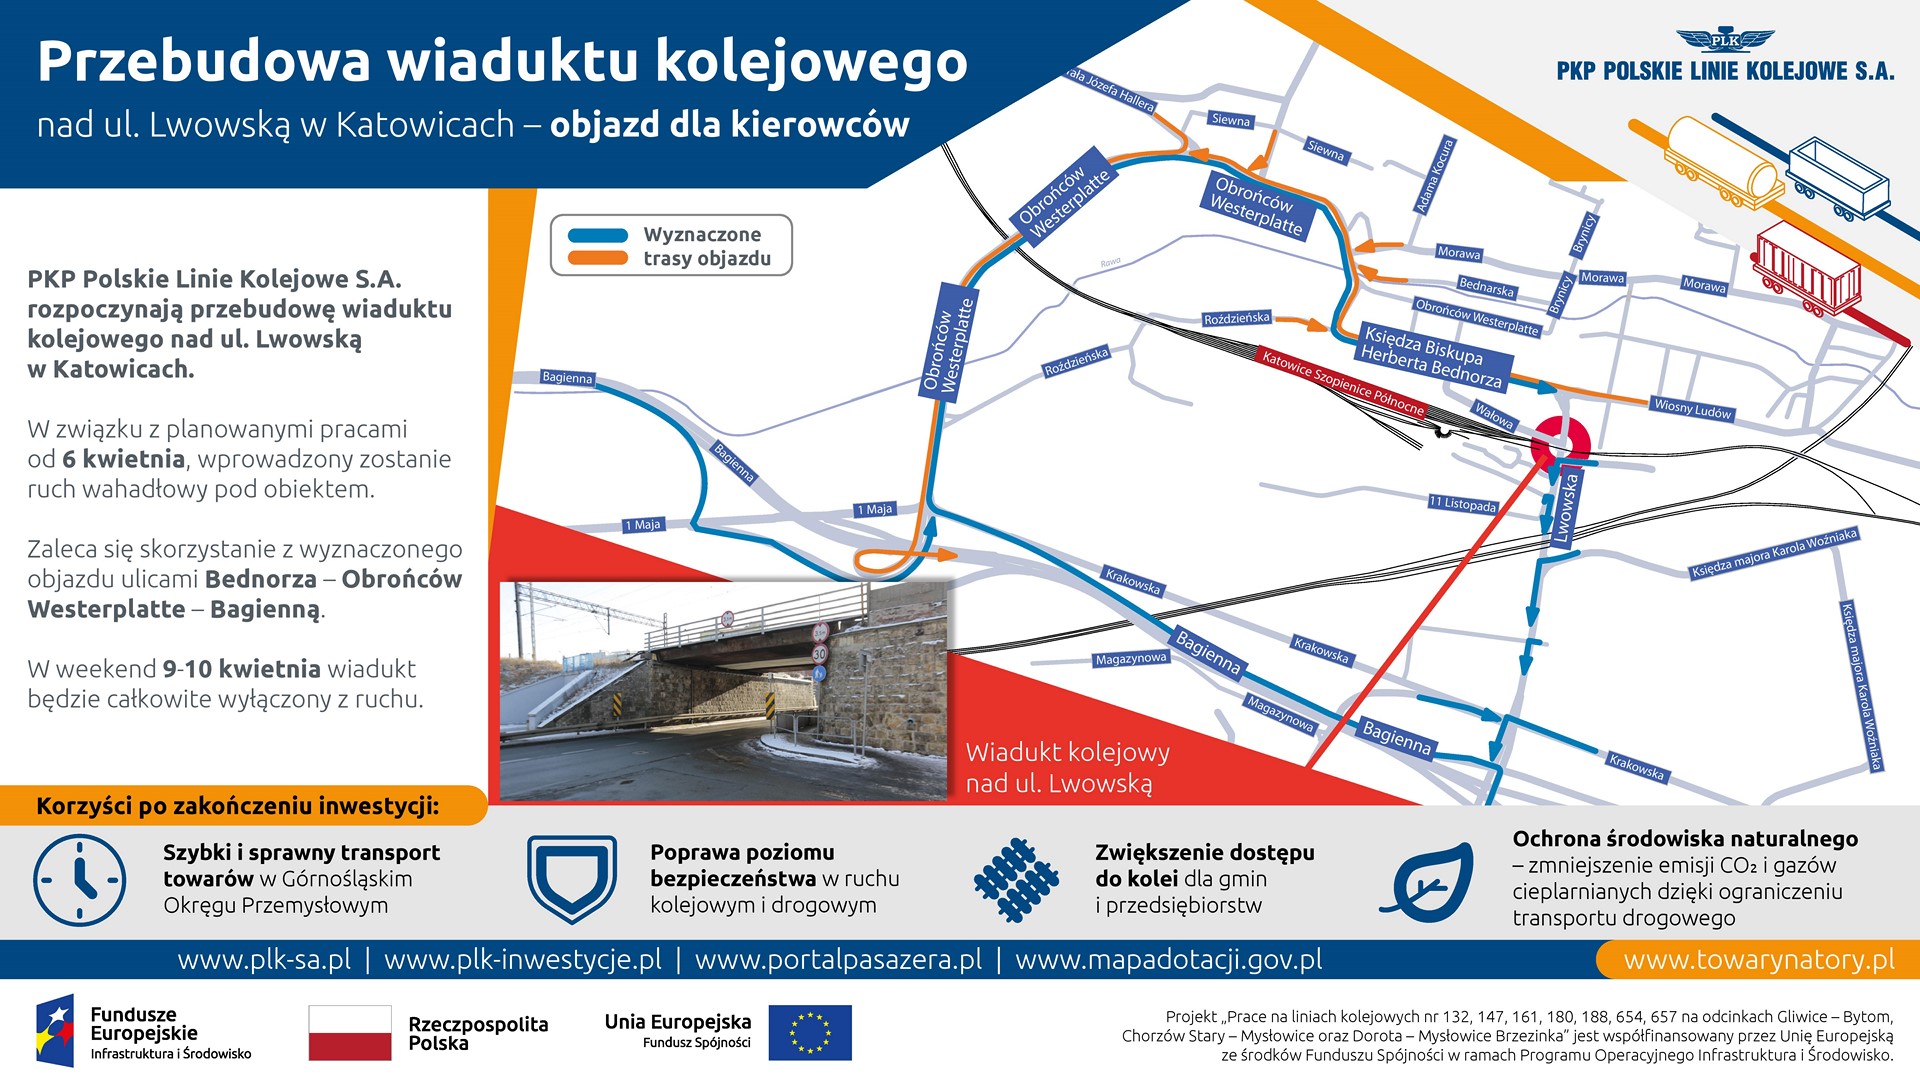 Infografika przedstawia mapkę obrazującą objazdy wiaduktu kolejowego nad ul. Lwowską.